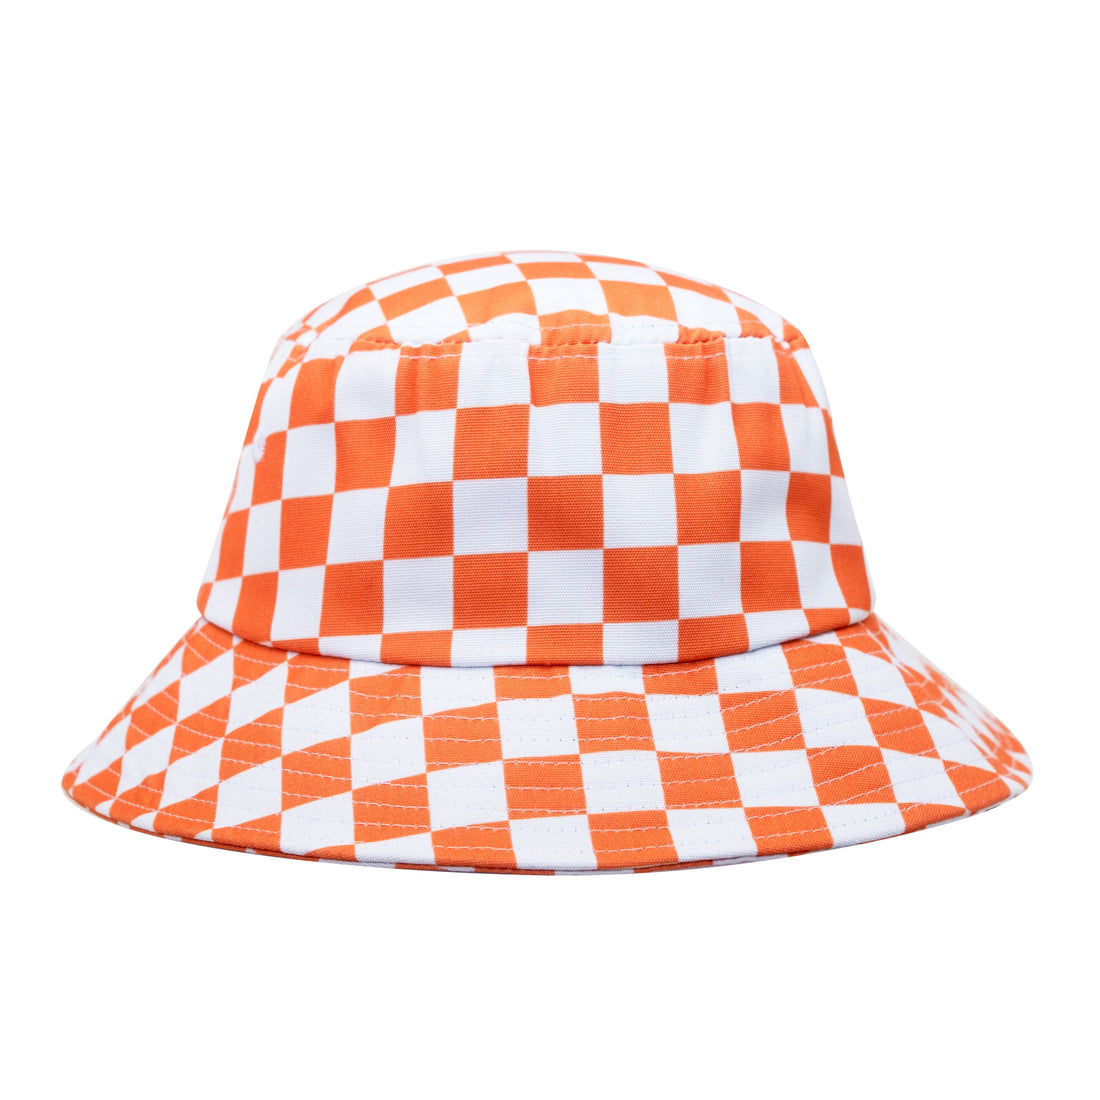 Checkmate Orange - bucket hat